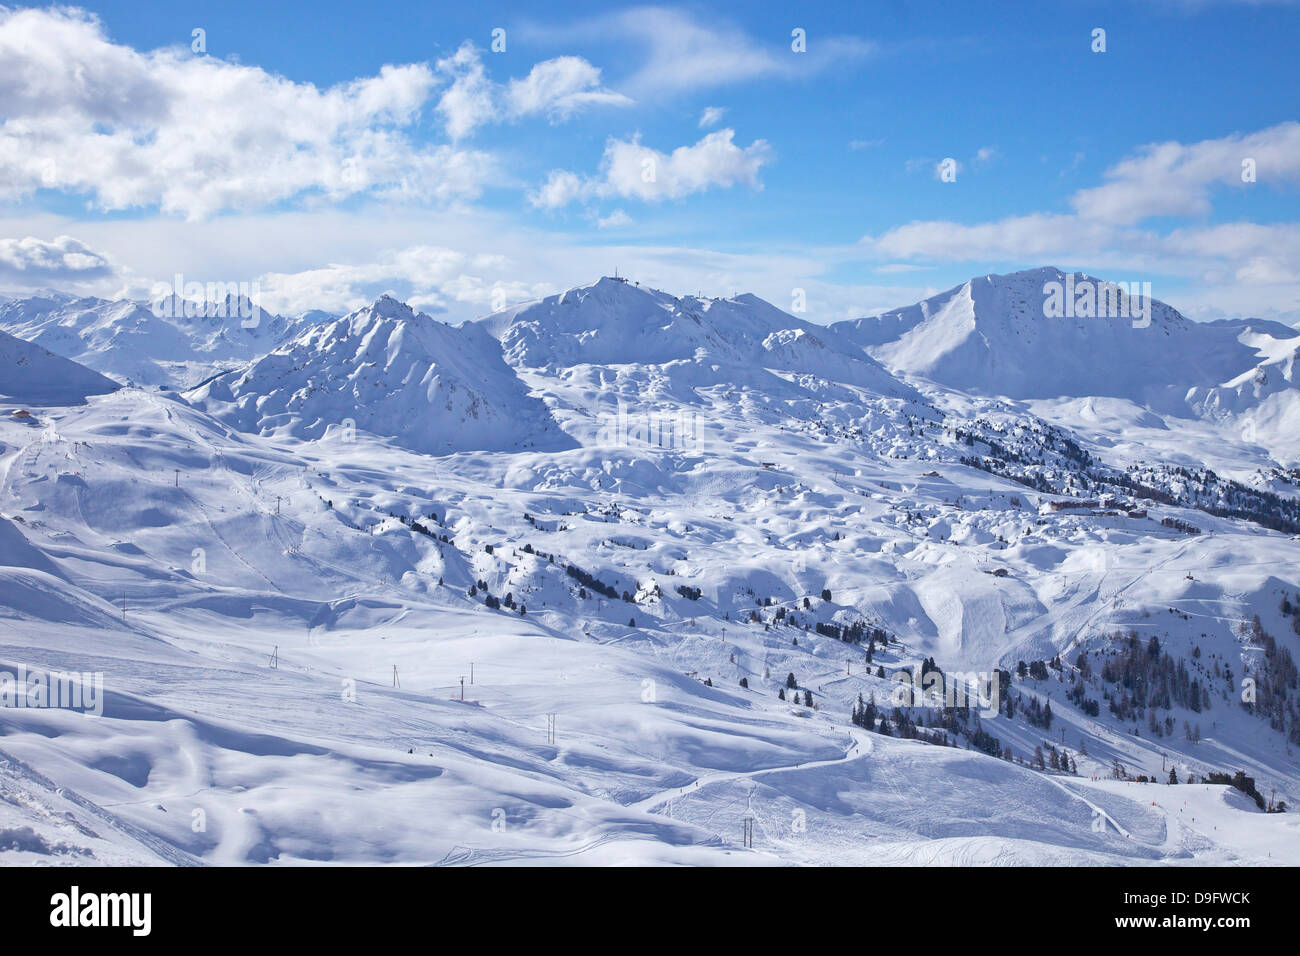 View of slopes near Belle Plagne, La Plagne, Savoie, French Alps, France Stock Photo